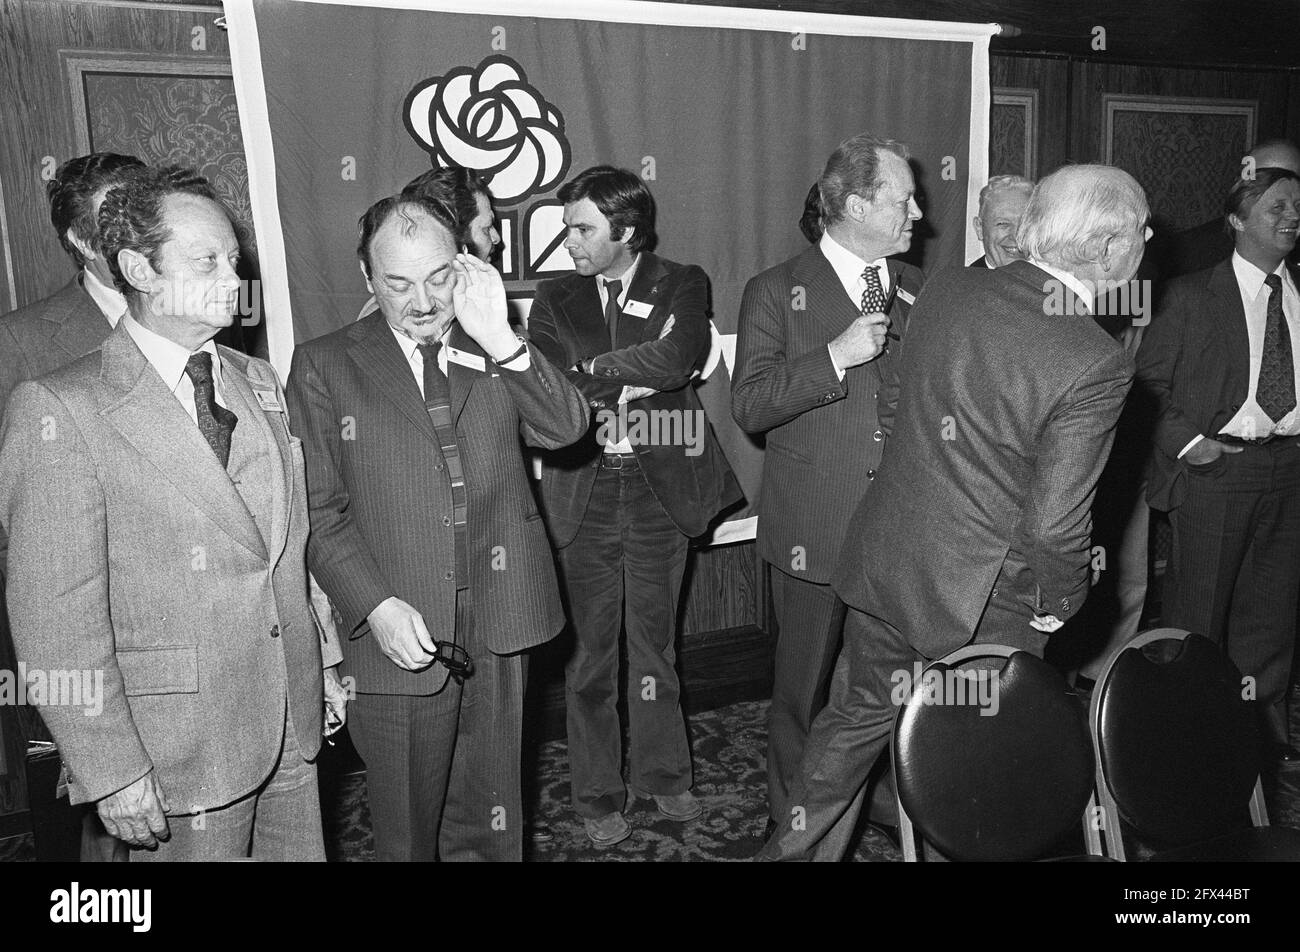 Le dirigeant social-démocrate néerlandais Joop den Uyl vérifie avec son  collègue allemand Willy Brandt pour voir où les autres participants à la  conférence sont restés pour la photo d'état, 16 avril 1977,